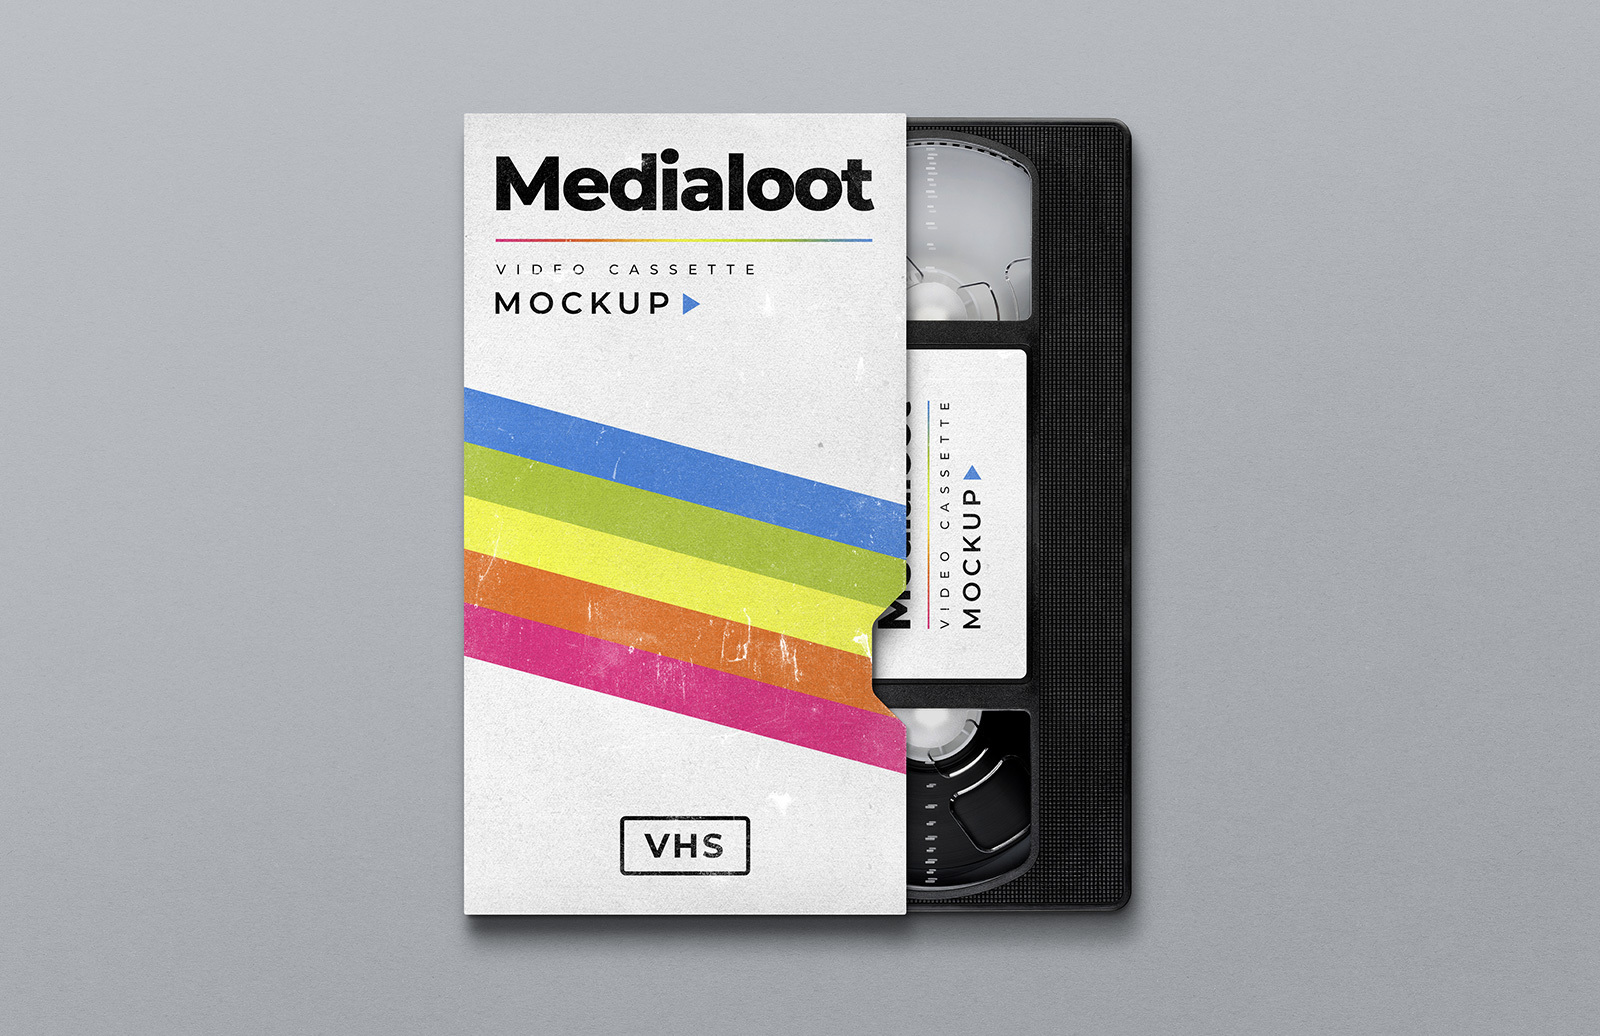 Vhs Cassette Cover Mockup Medialoot